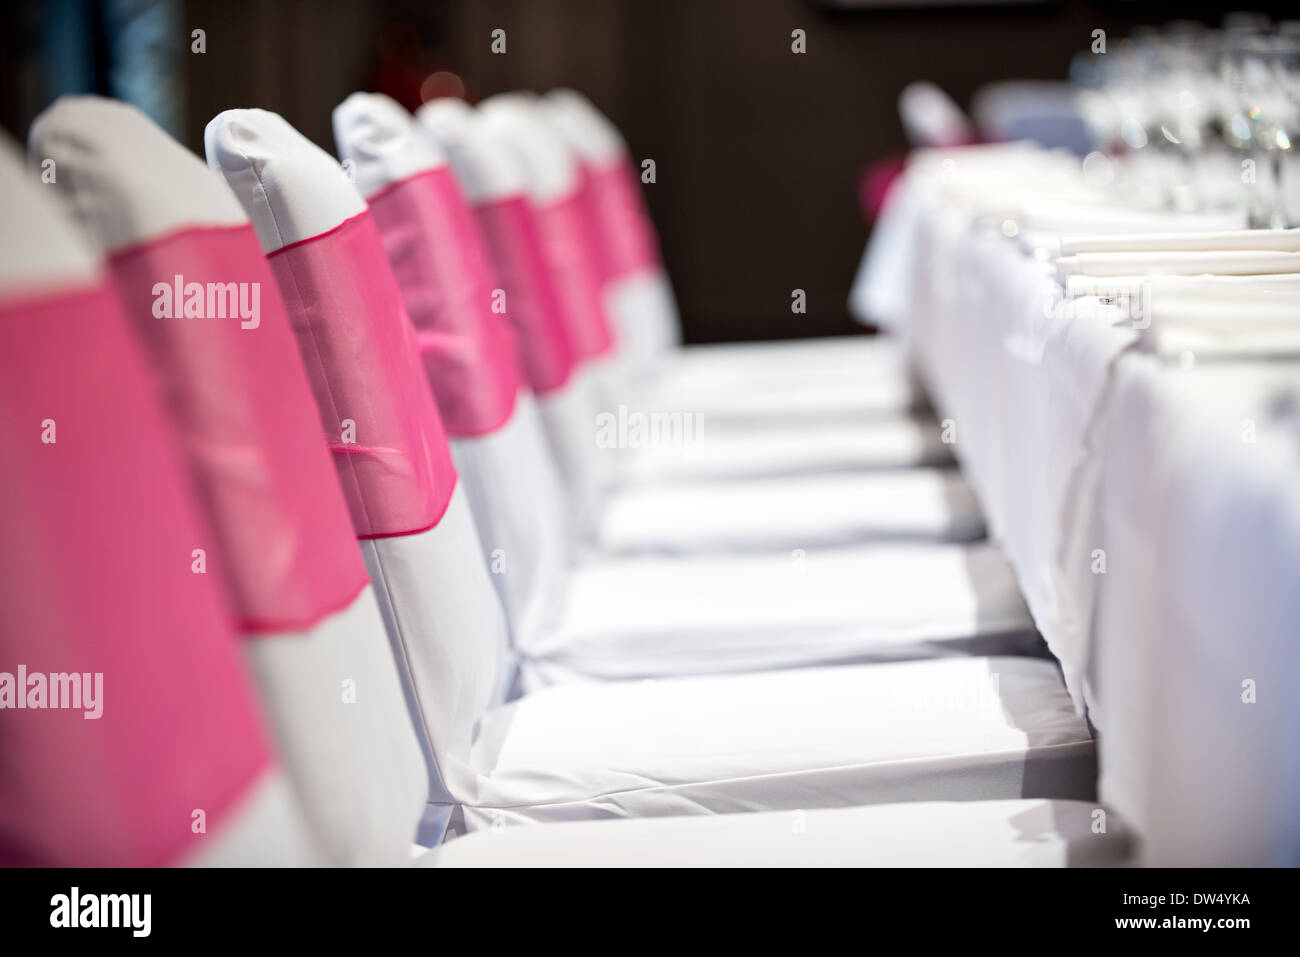 Ein flacher Fokus Bild von einem Bankett Tische Maßgedecke & rosa Schleife gehüllt Plätze warten auf die Ankunft der Hochzeitsgäste Stockfoto